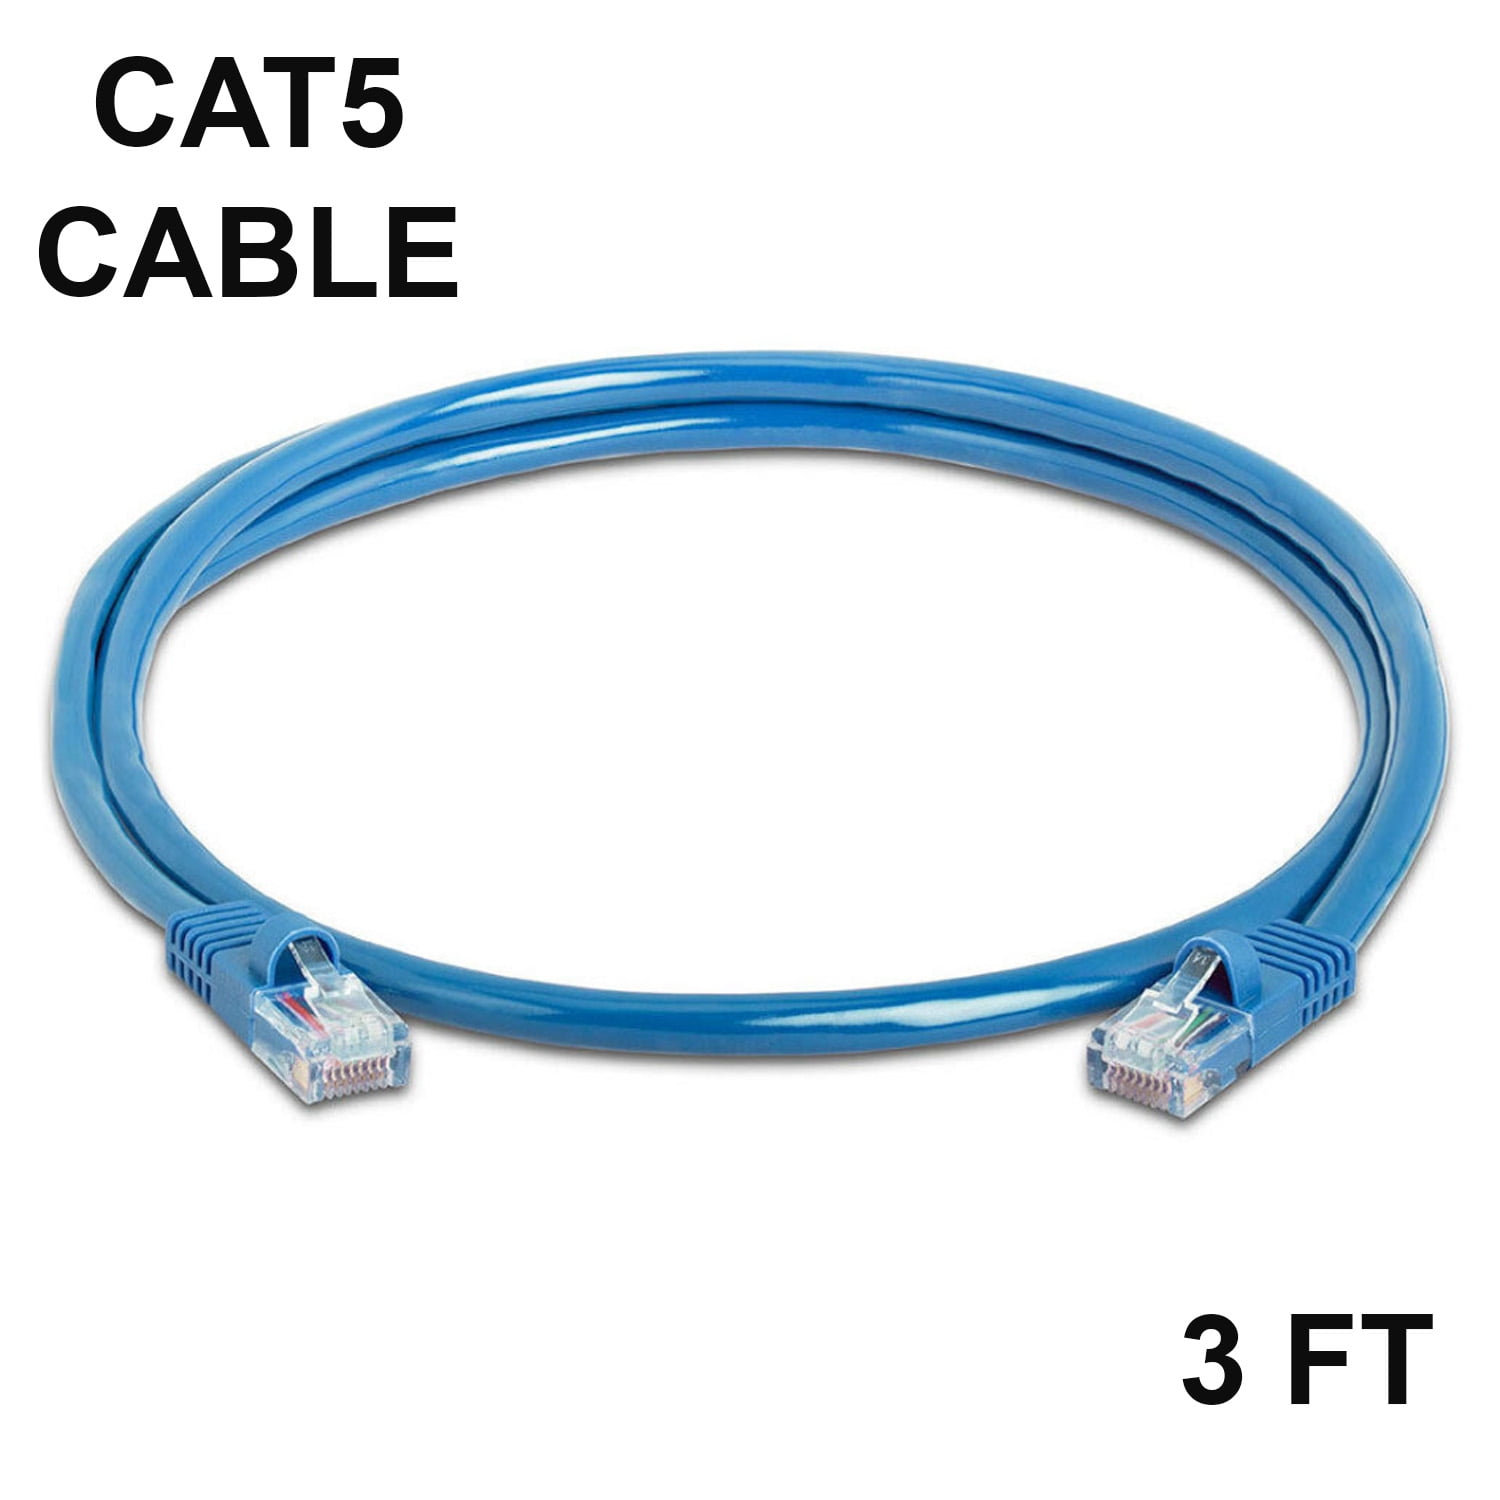 Cable Cord RJ45  Cat 5e Cat-5 Cat5E Stranded UTP LAN Internet Network Ethernet 